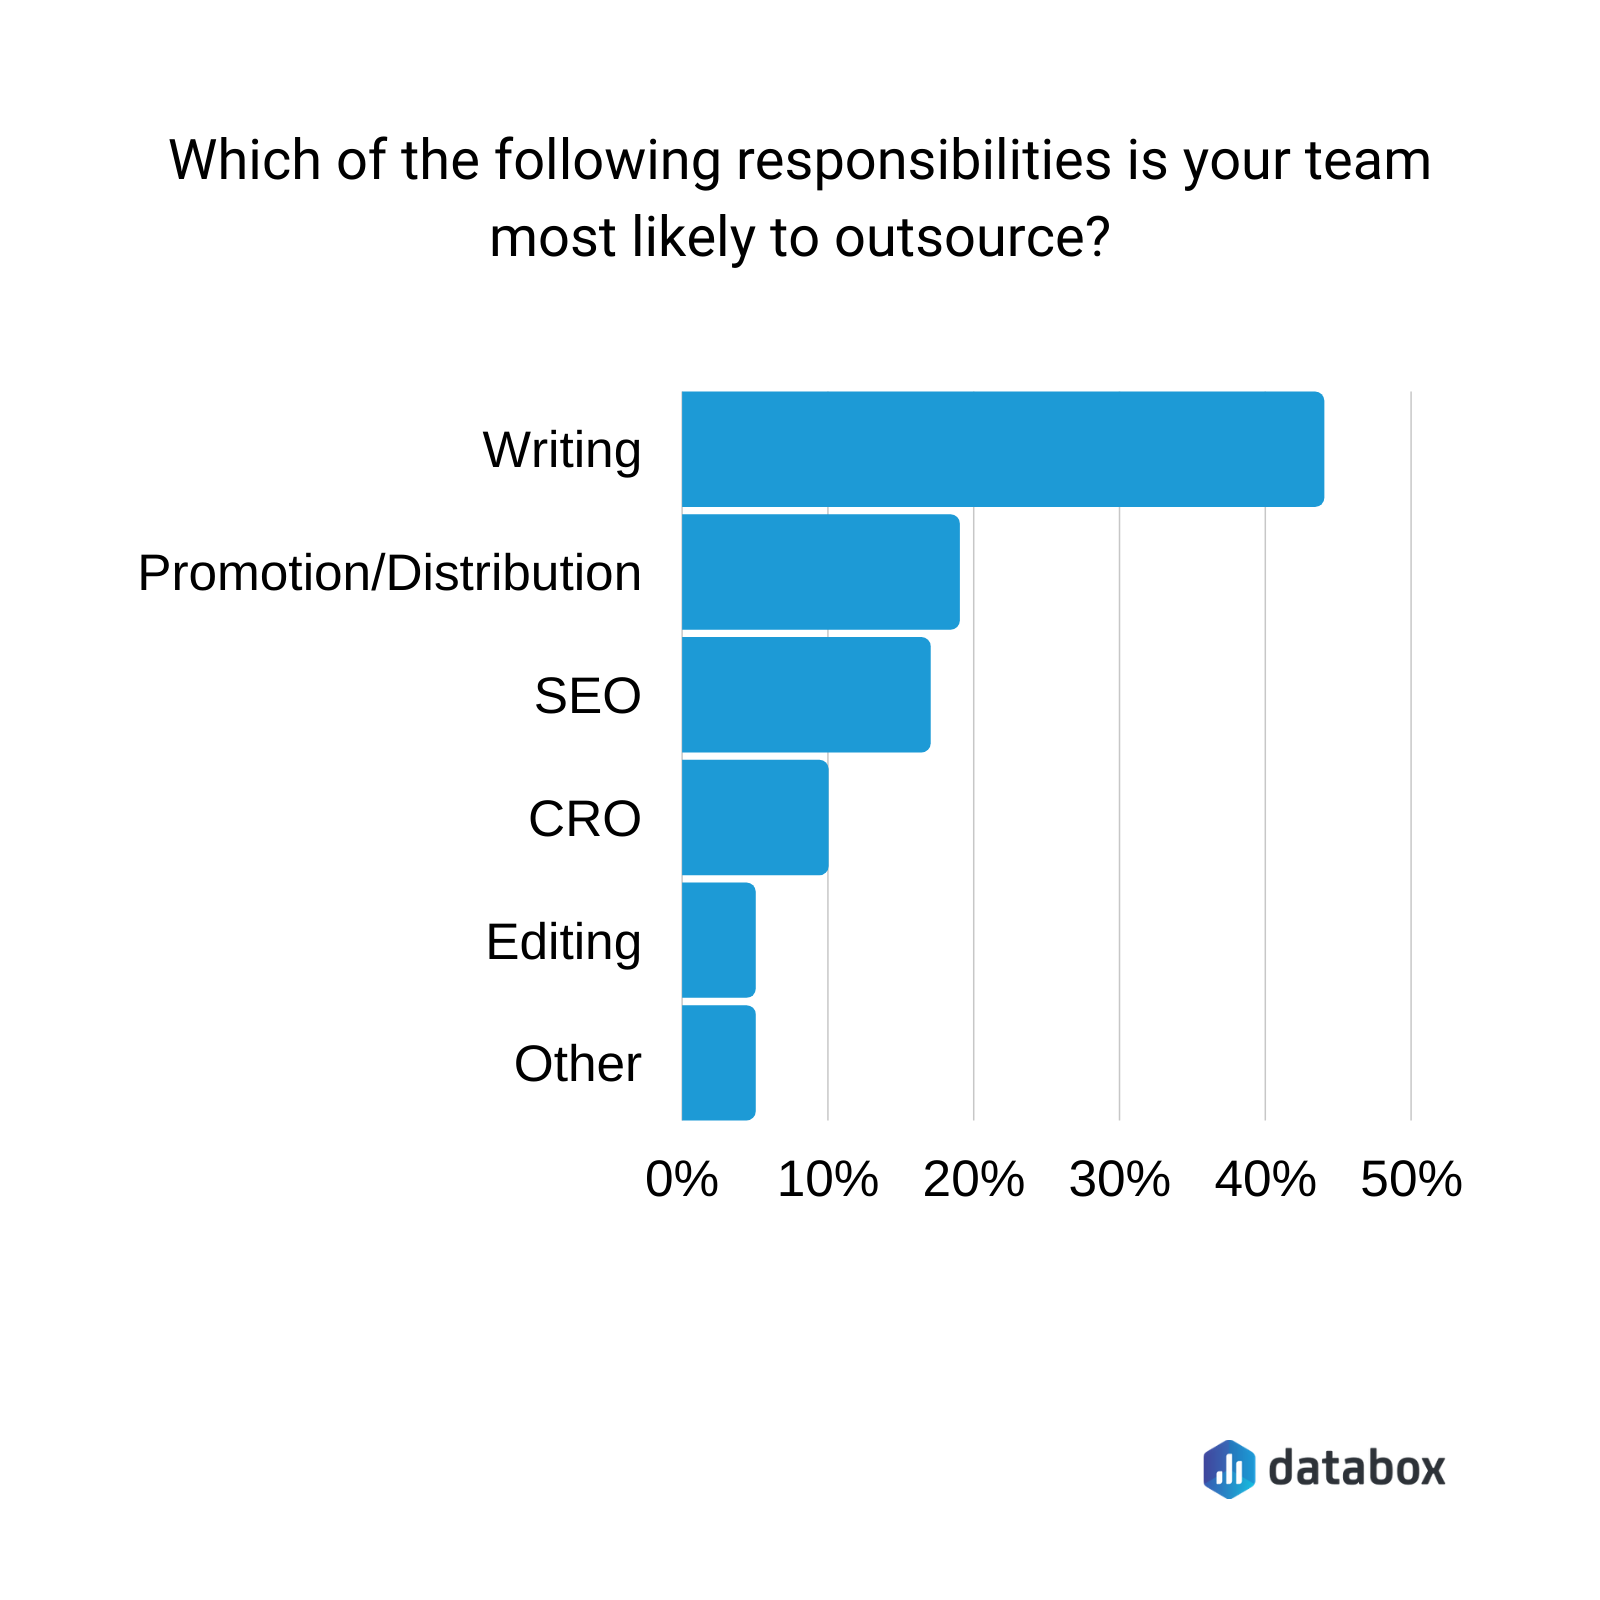 次の責任のうち、あなたのチームがアウトソーシングする可能性が最も高いのはどれですか?